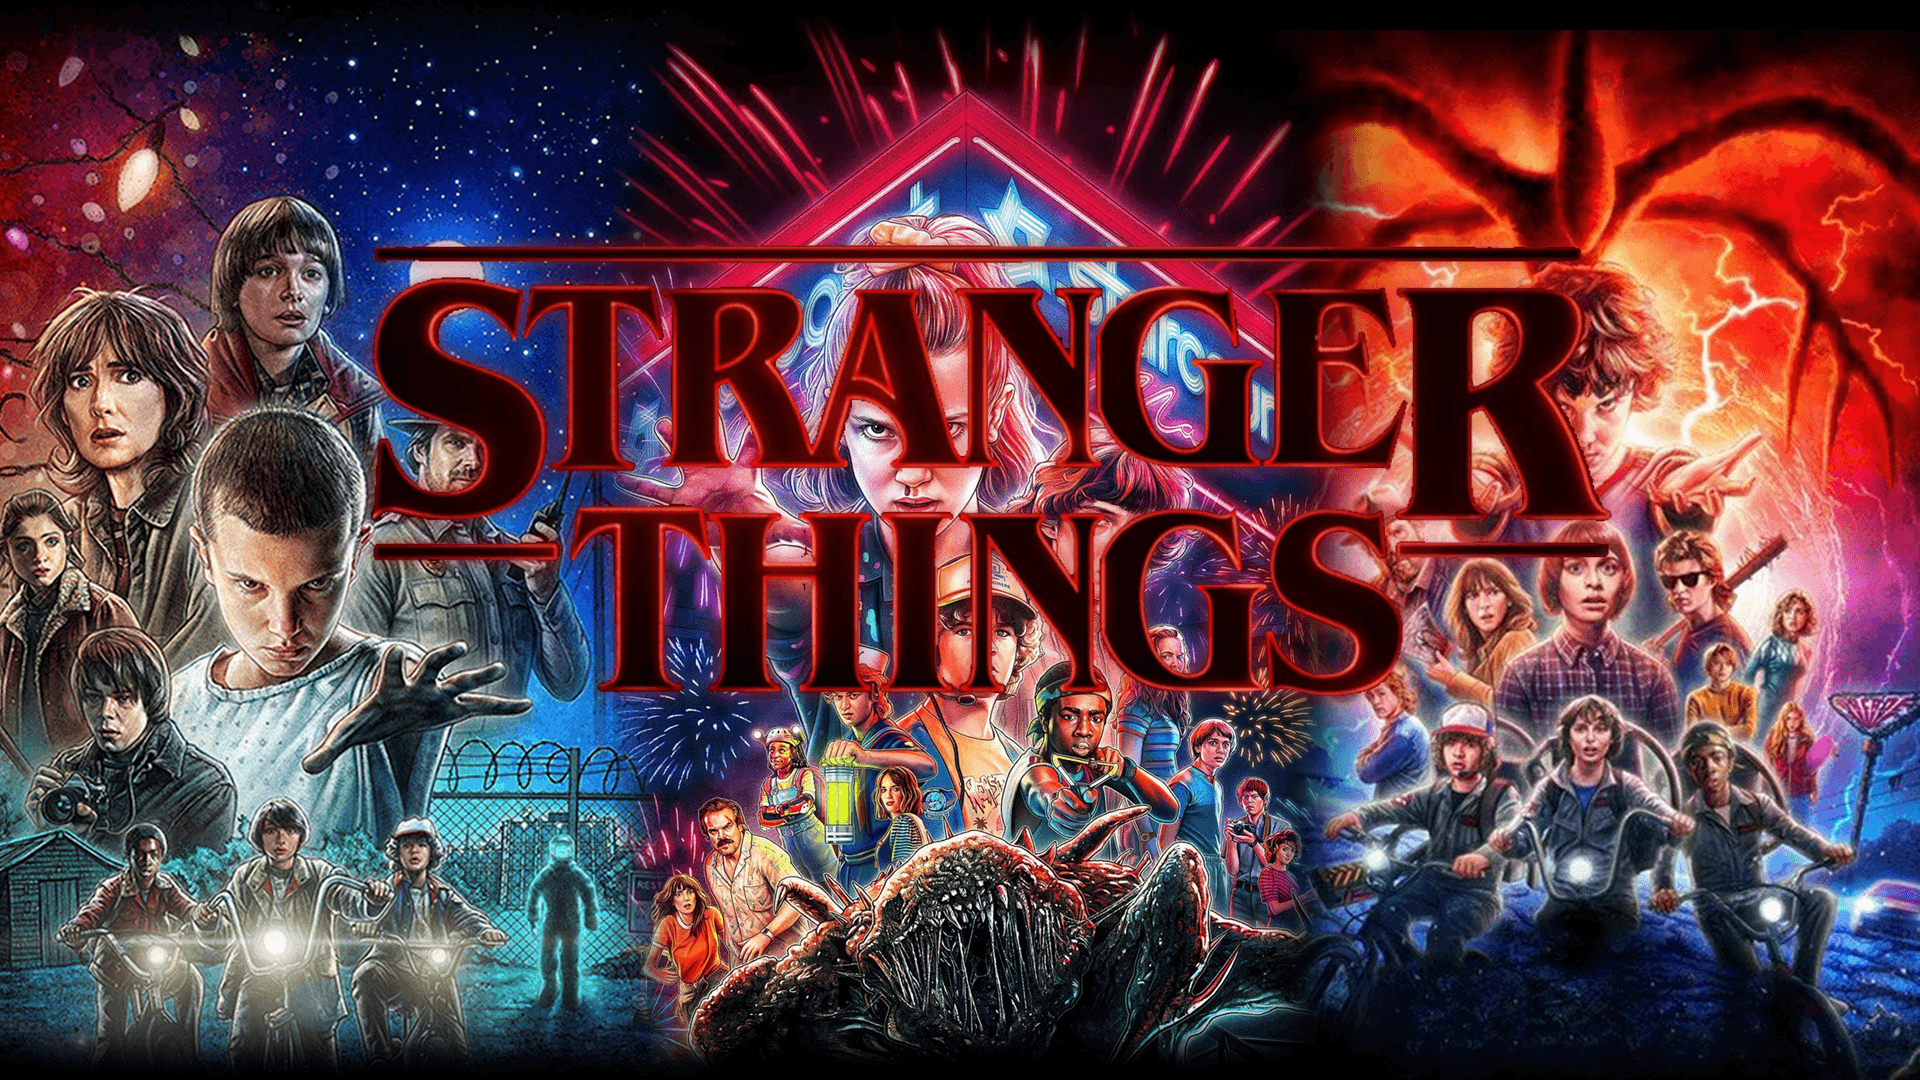 Stranger things S1 S2 S3. 1920x1080